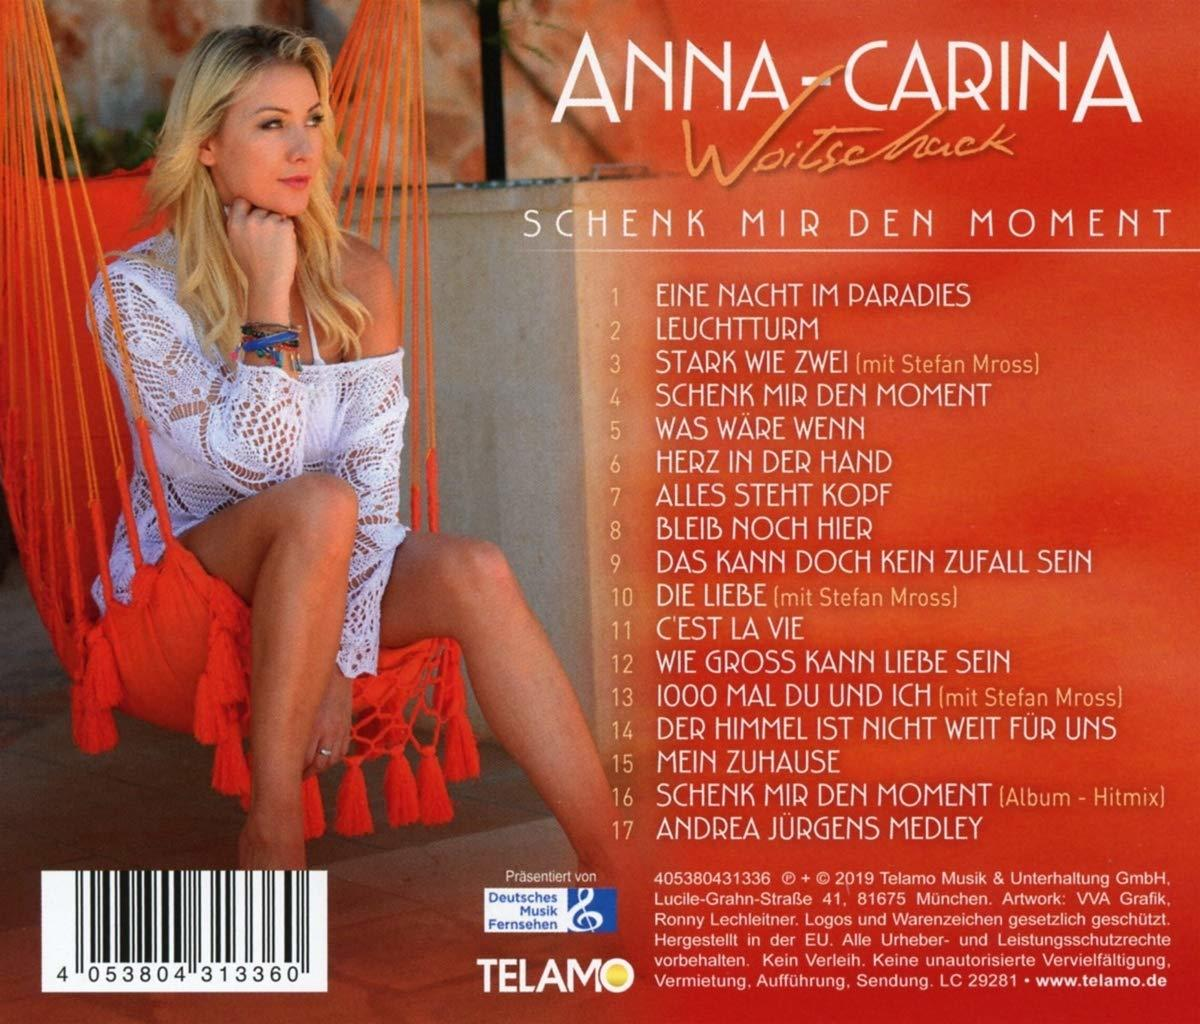 (CD) - Woitschack Anna-Carina mir Moment - den Schenk